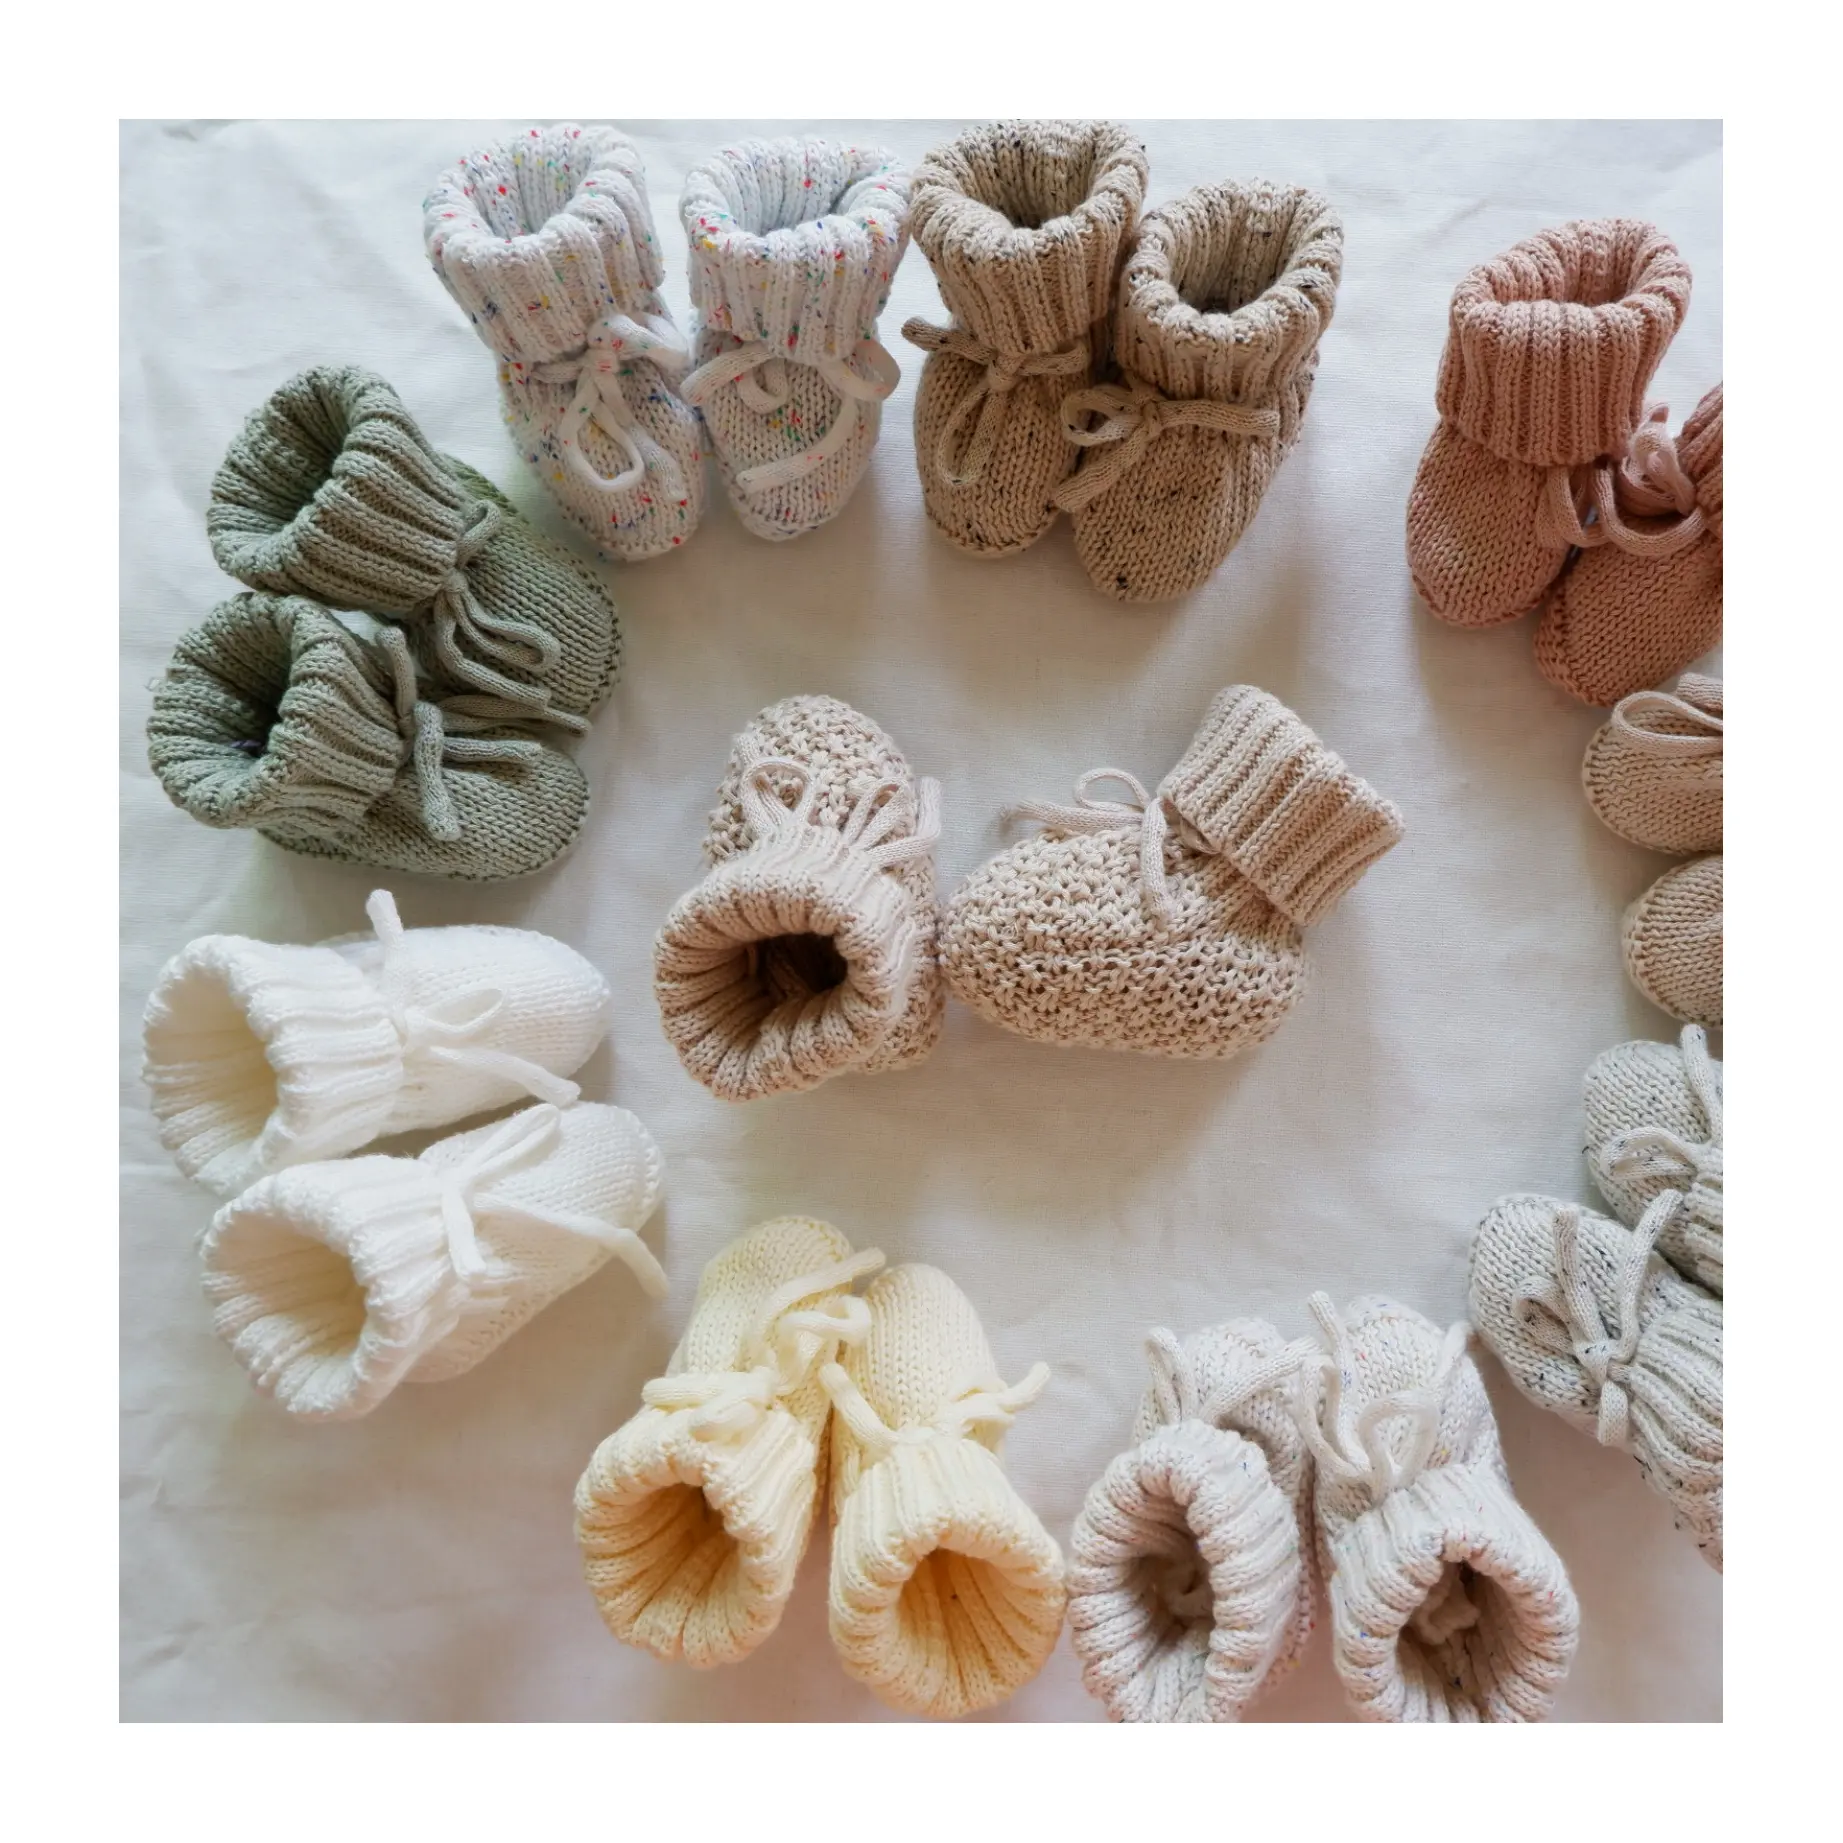 Botas de invierno personalizadas para bebés, calcetines cálidos de algodón orgánico, 100%